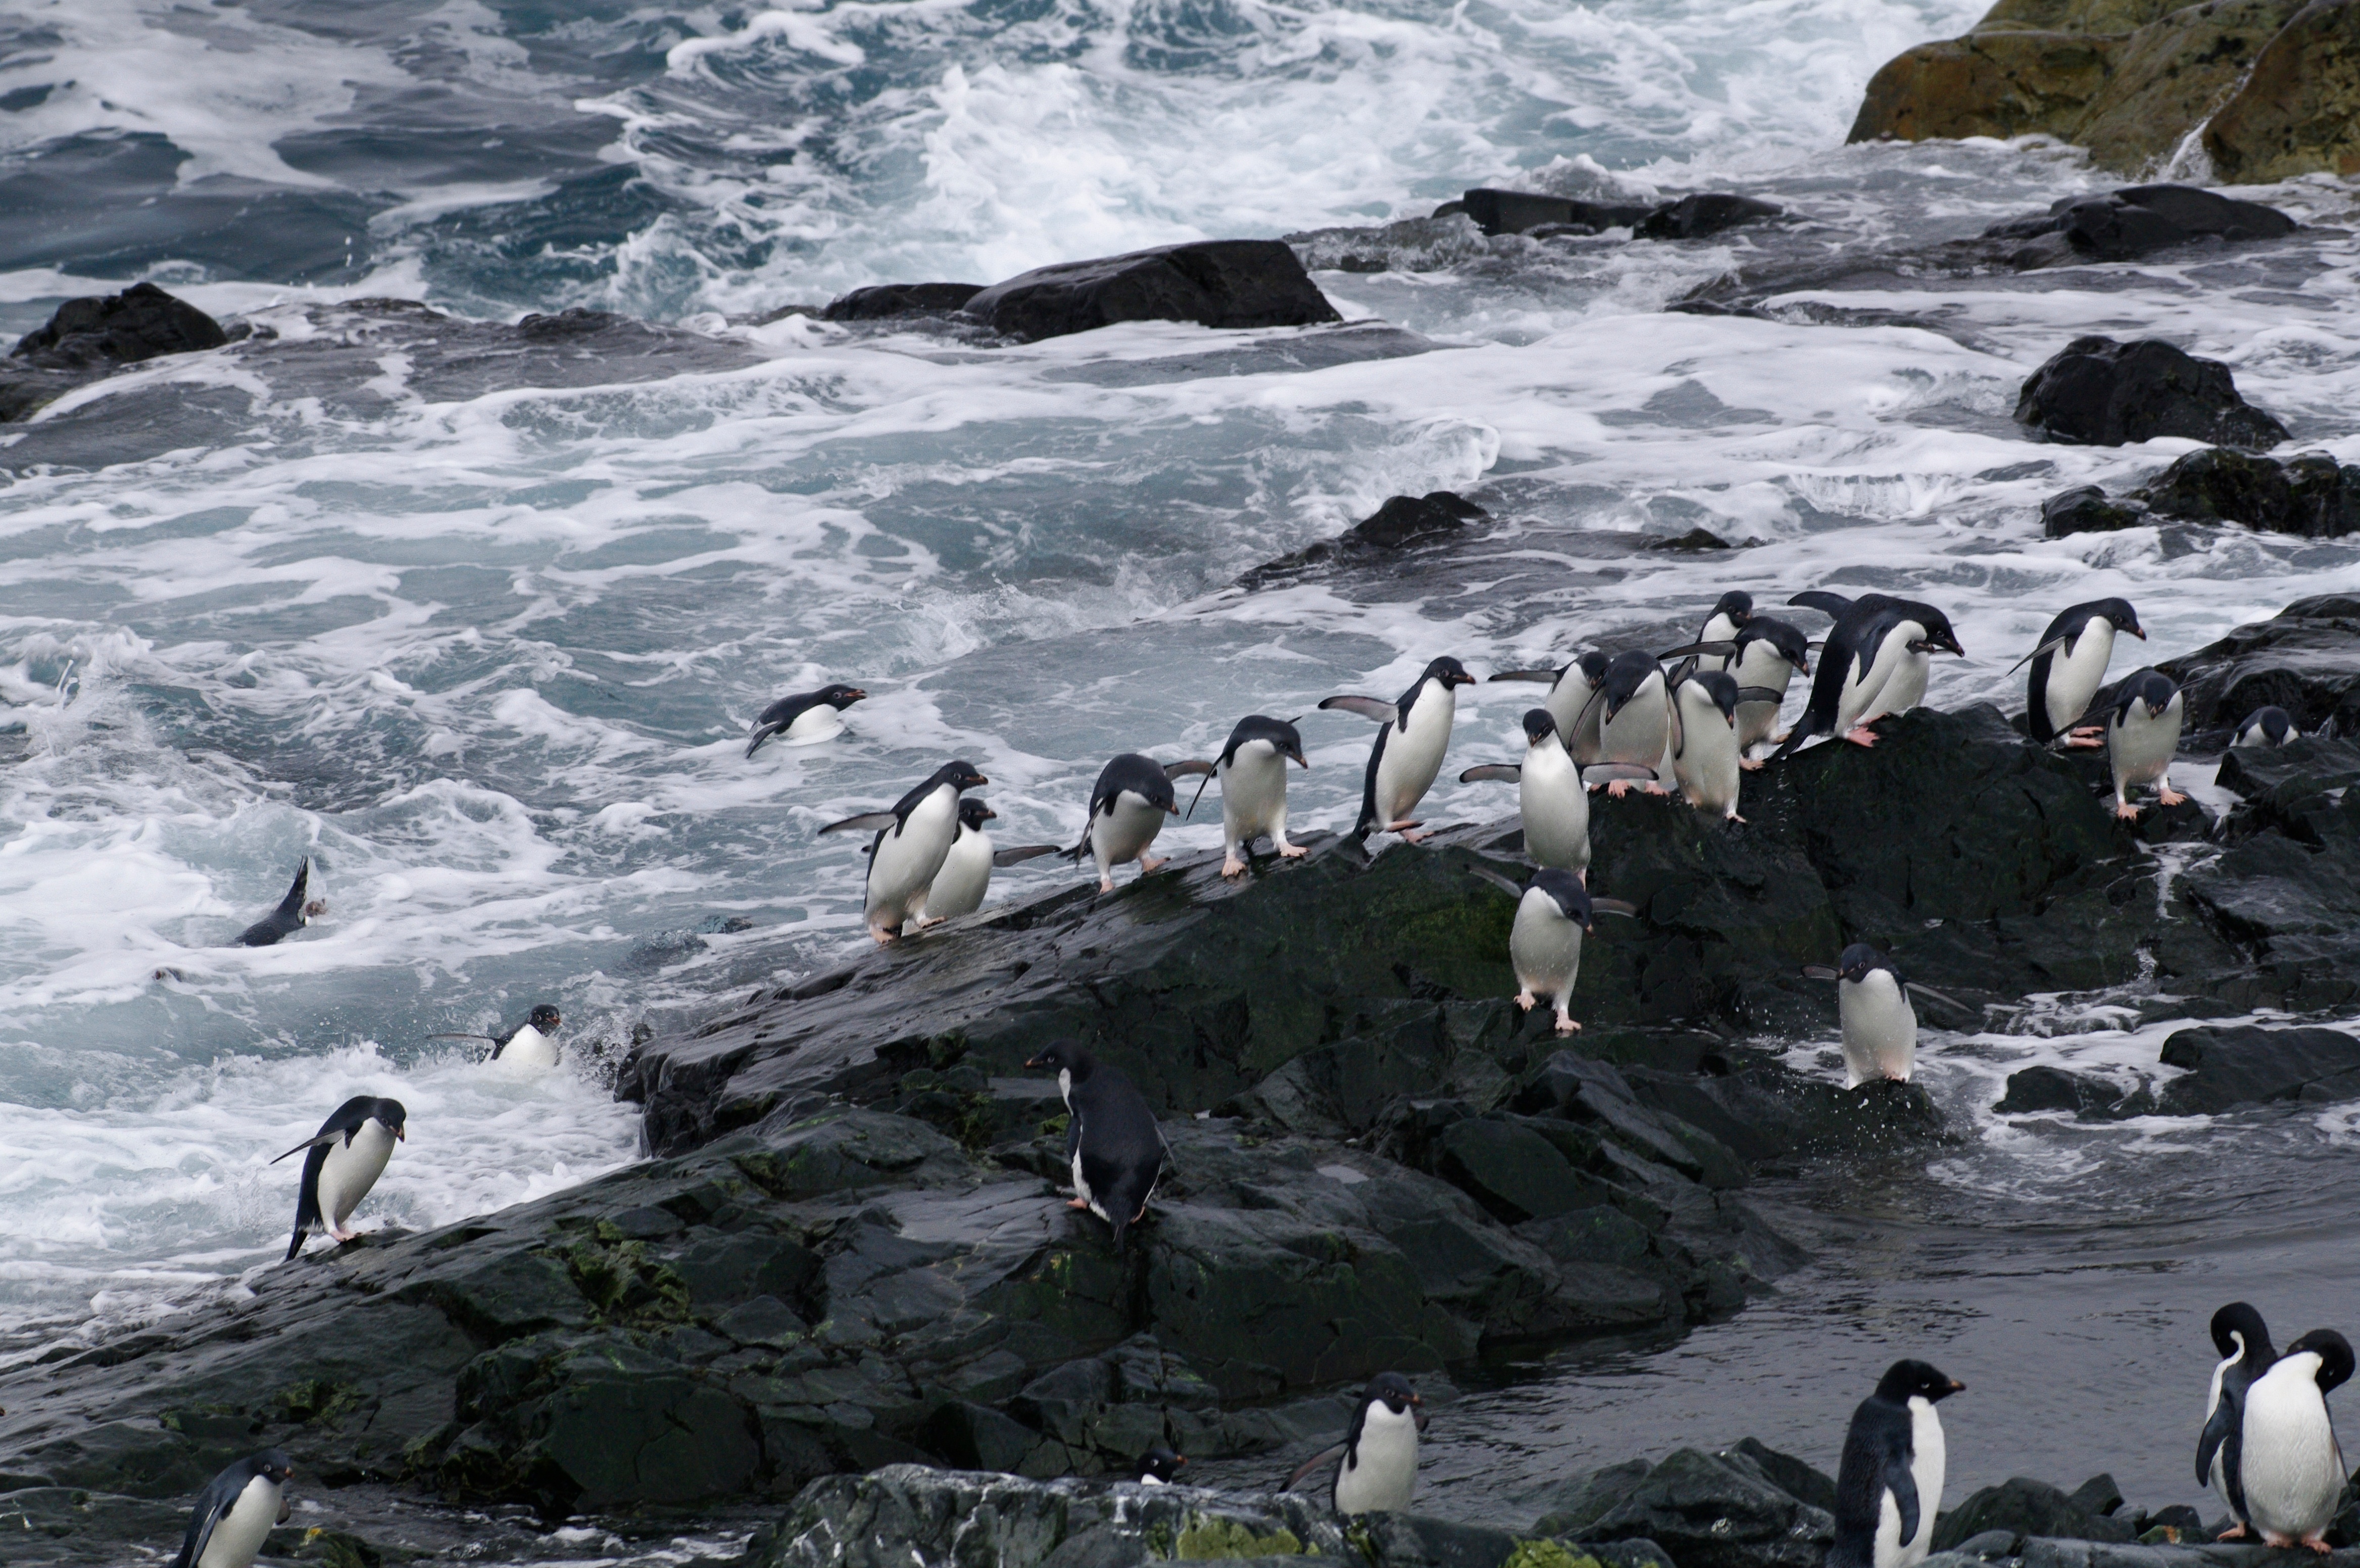 Penguins on a rocky beach.